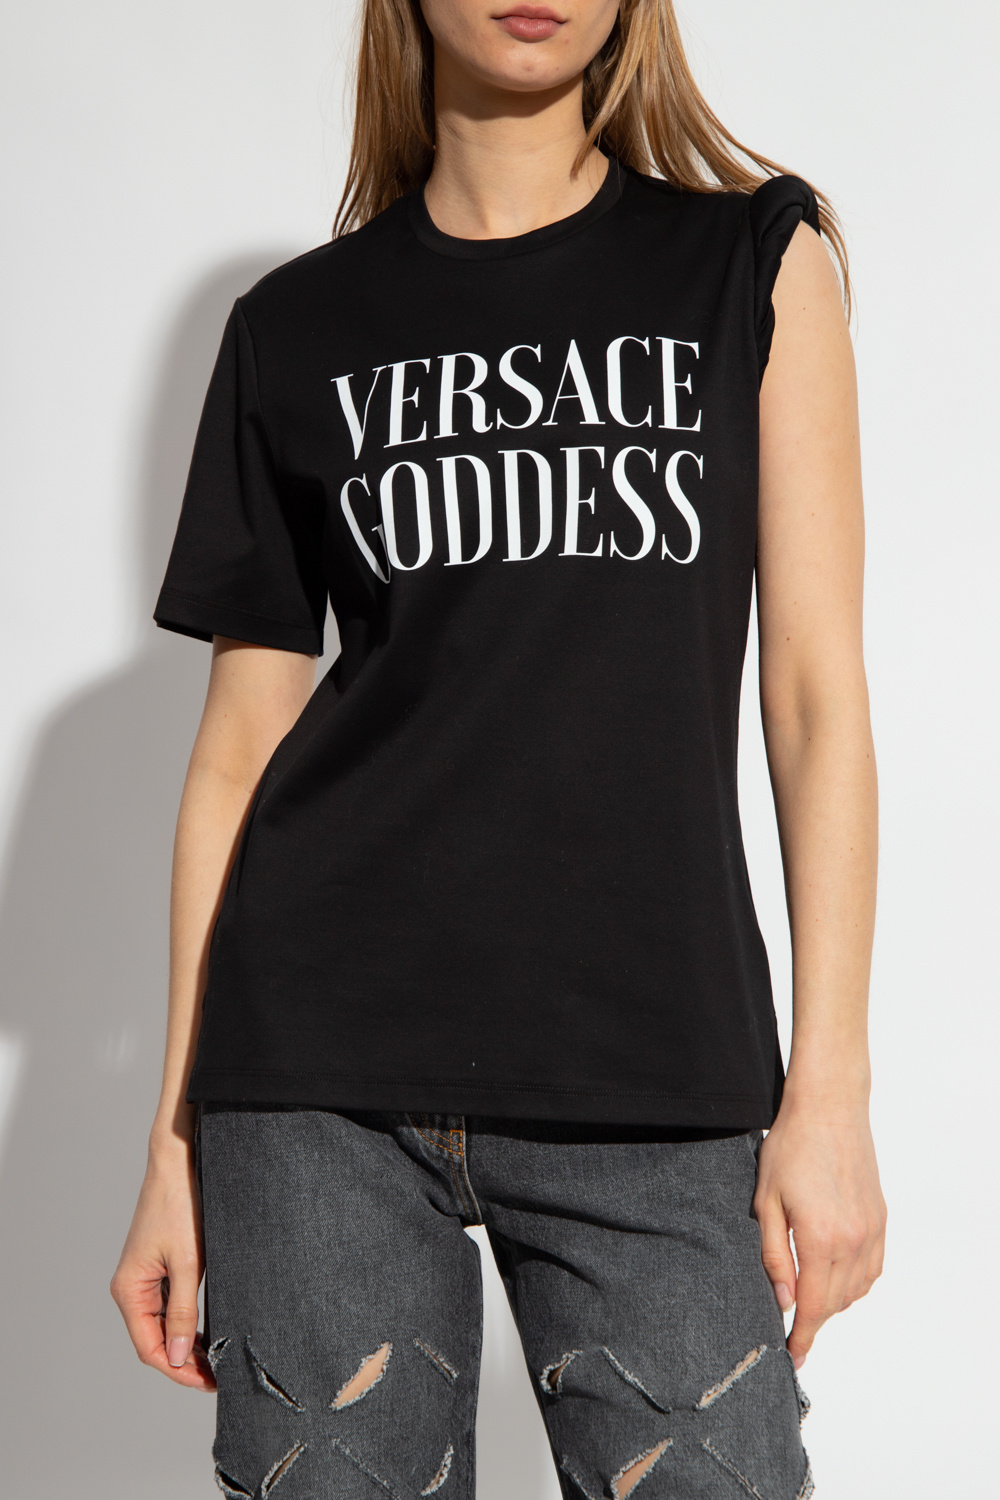 Versace cotton-blend shirt polo dress Neutrals